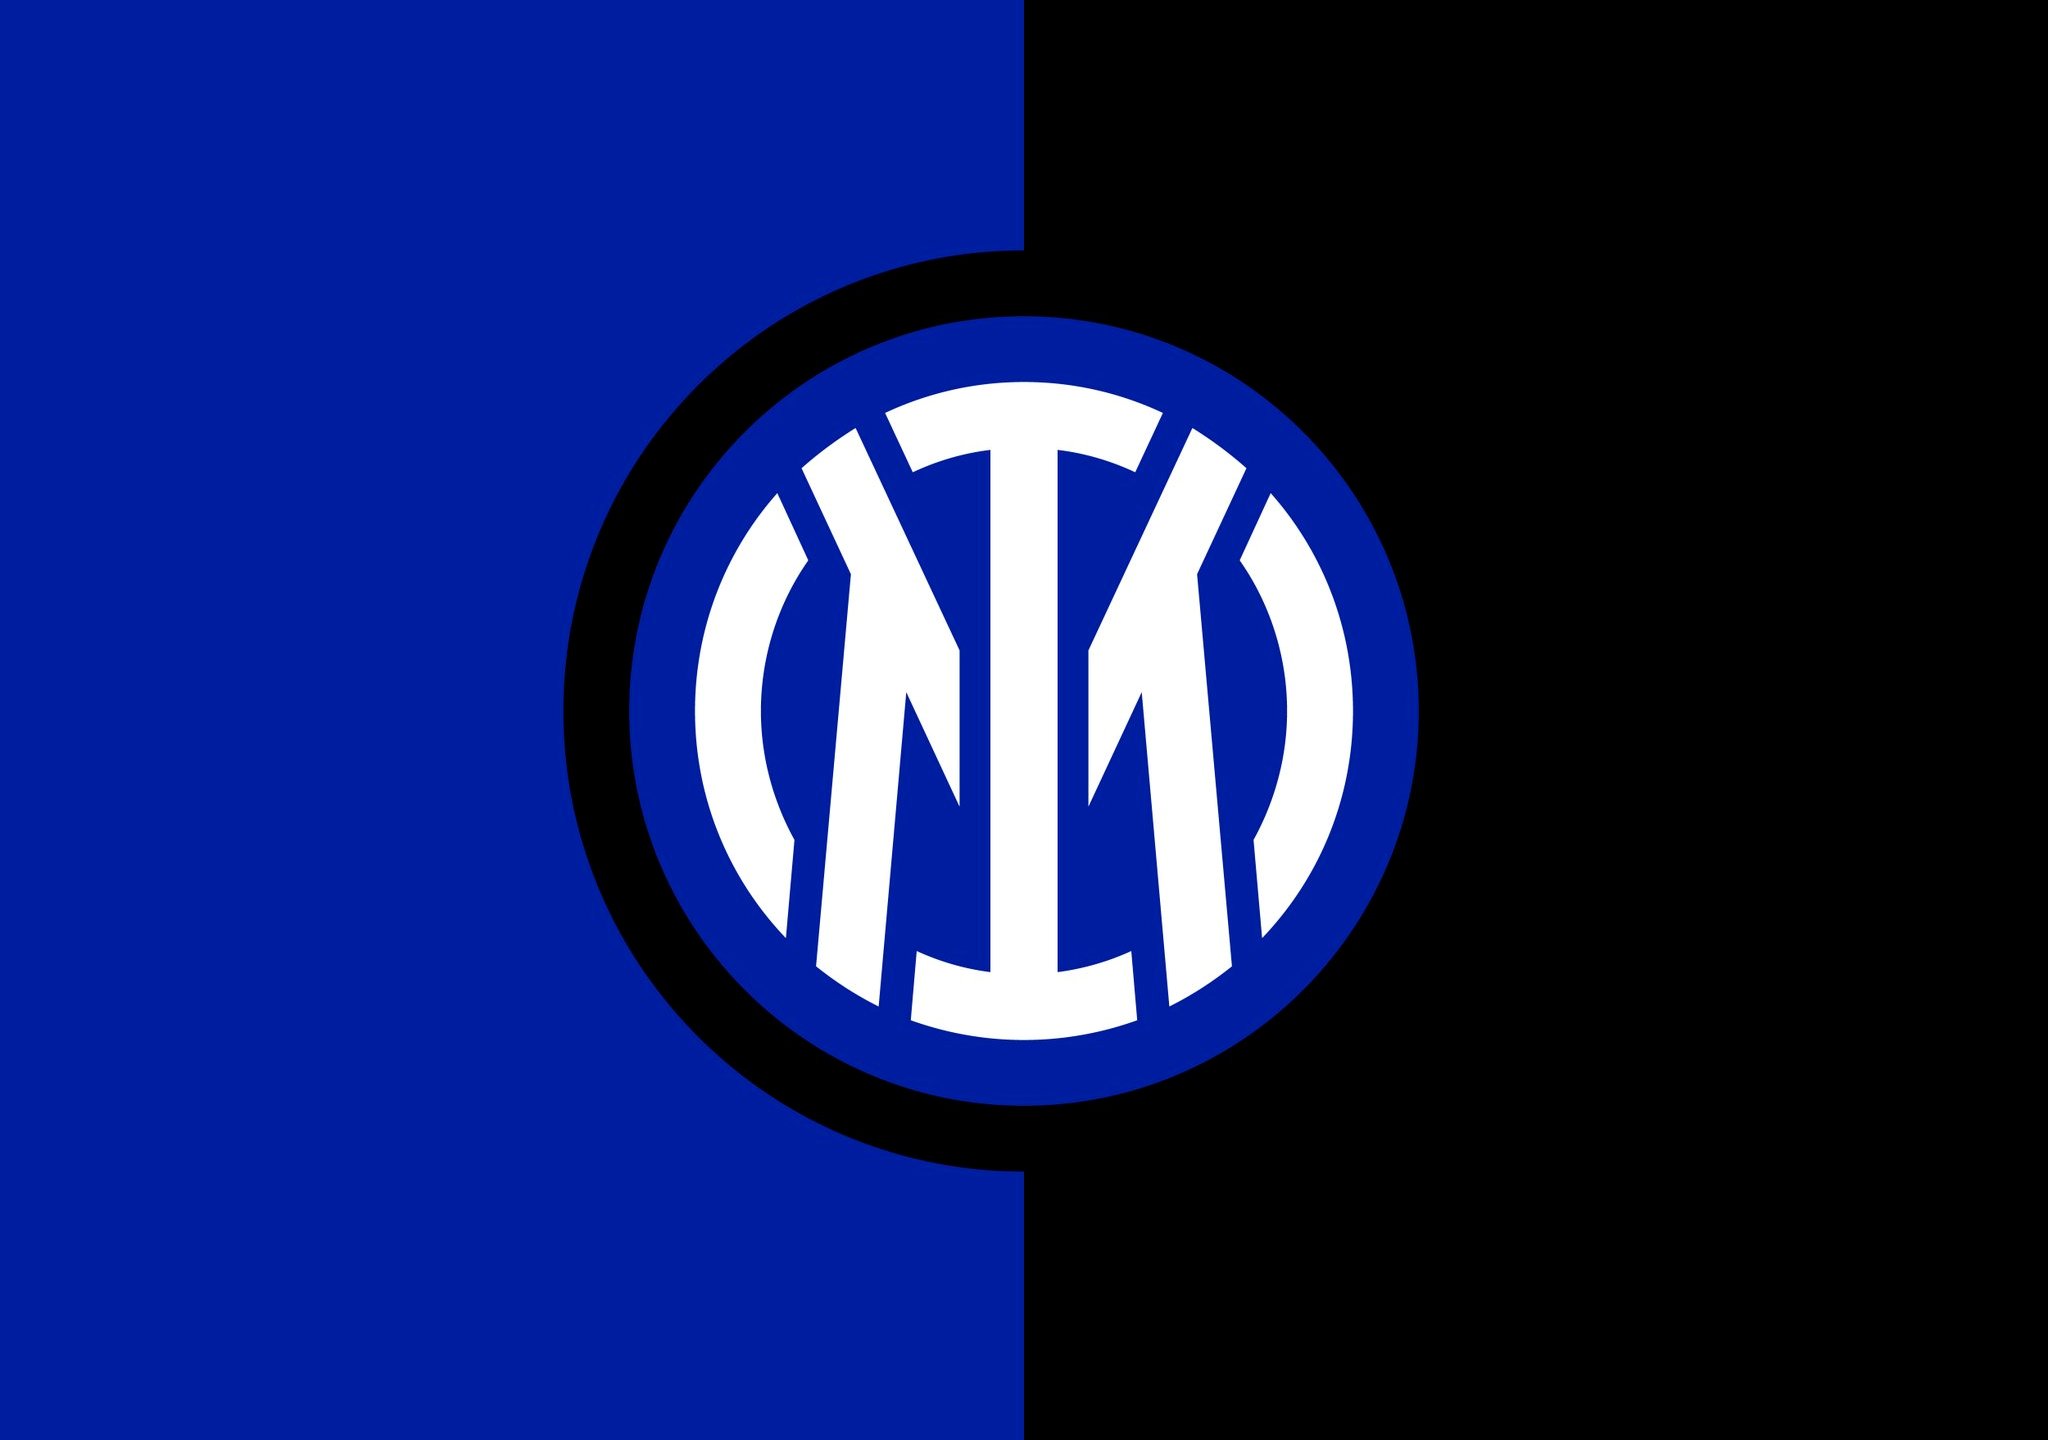 “Inter” futbol klubining yangi logotipi